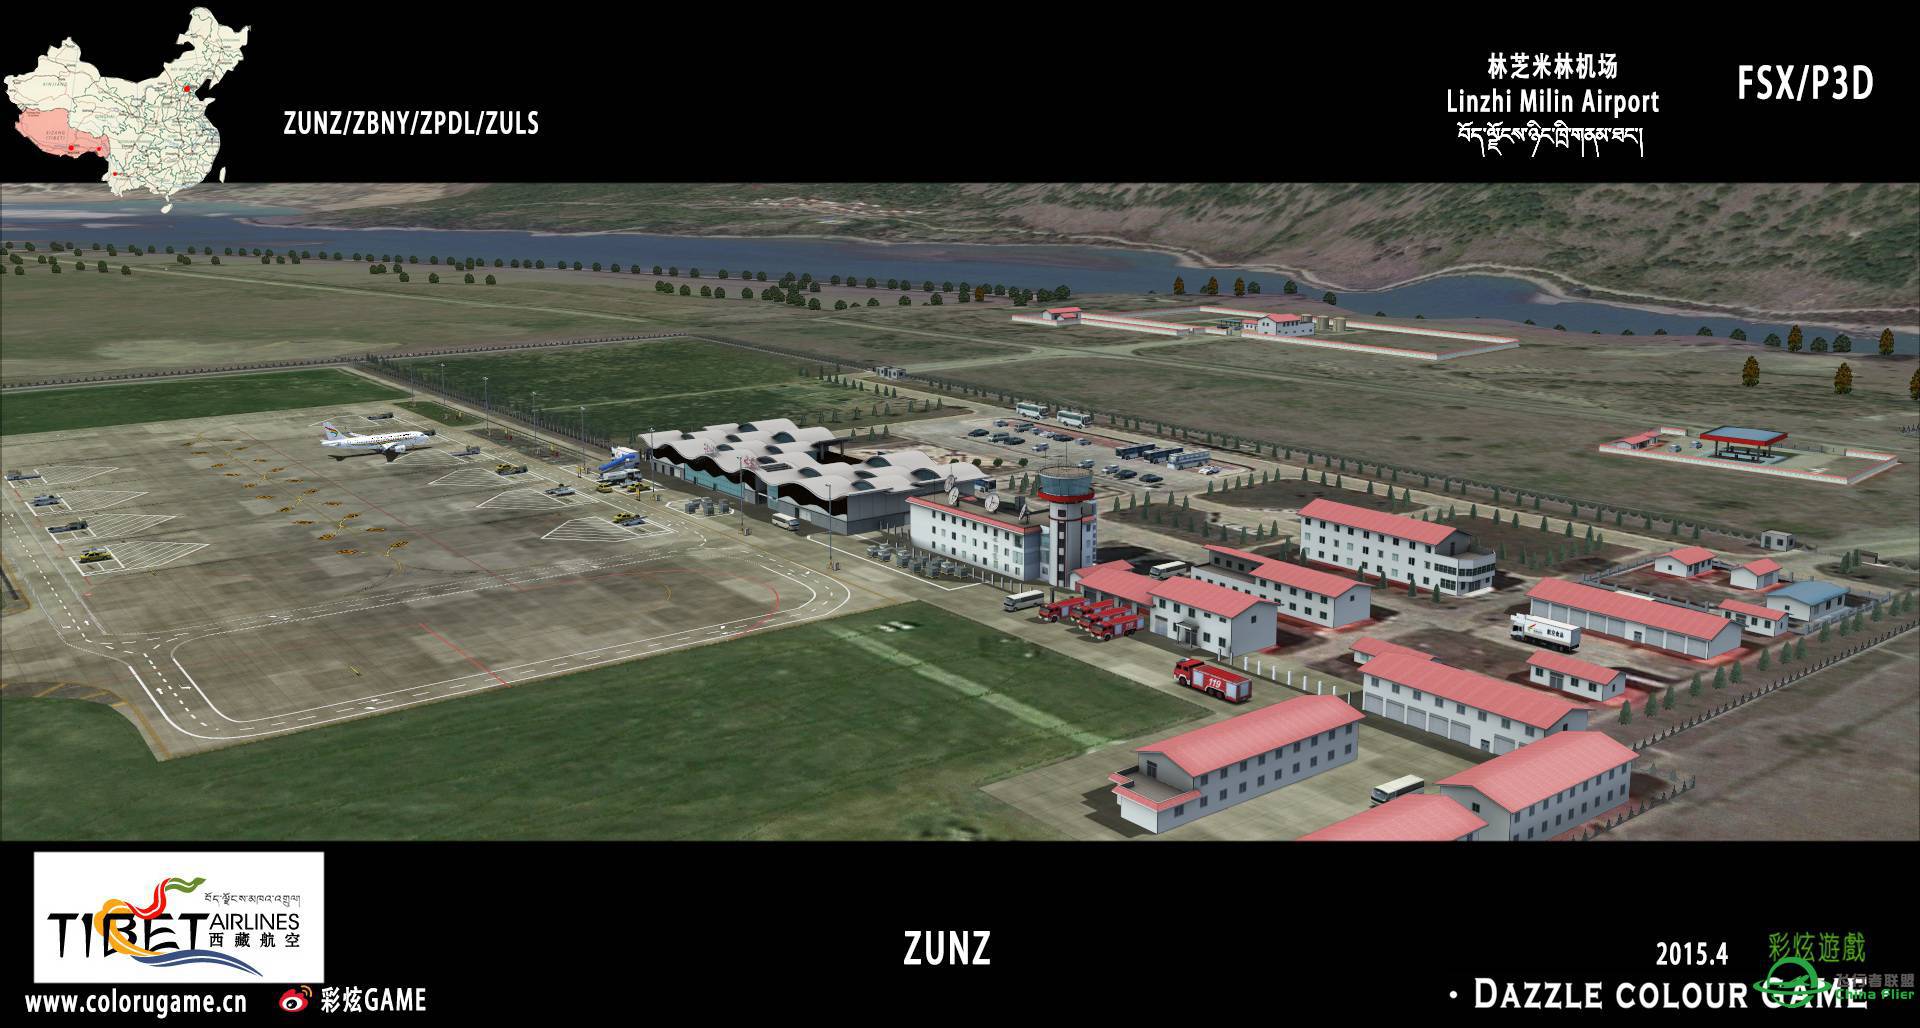 彩炫地景：林芝米林机场（ZUNZ）正式发布！-6897 